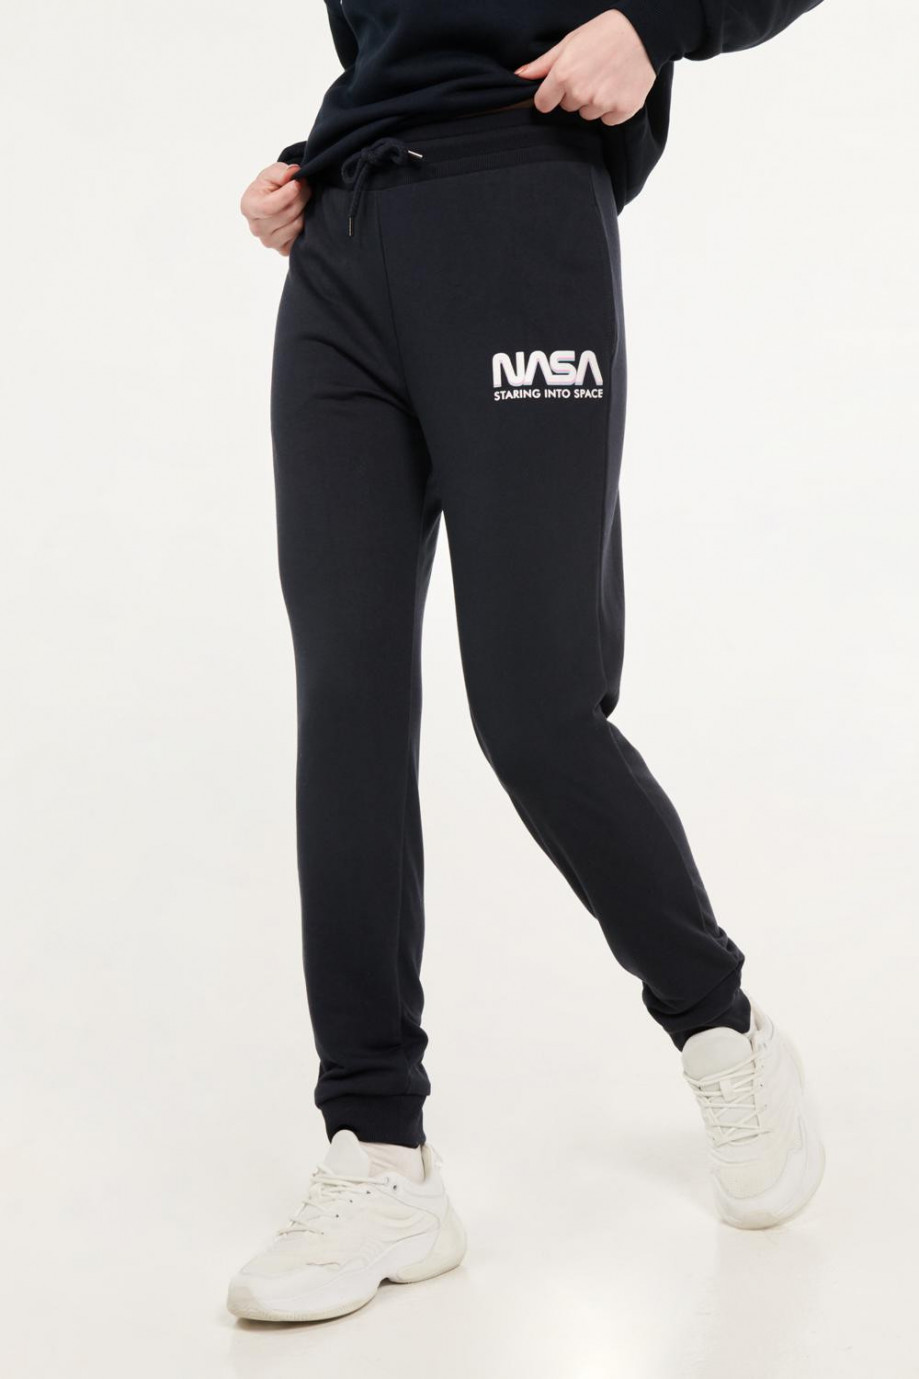 Pantalón jogger negro con letras blancas de NASA estampadas